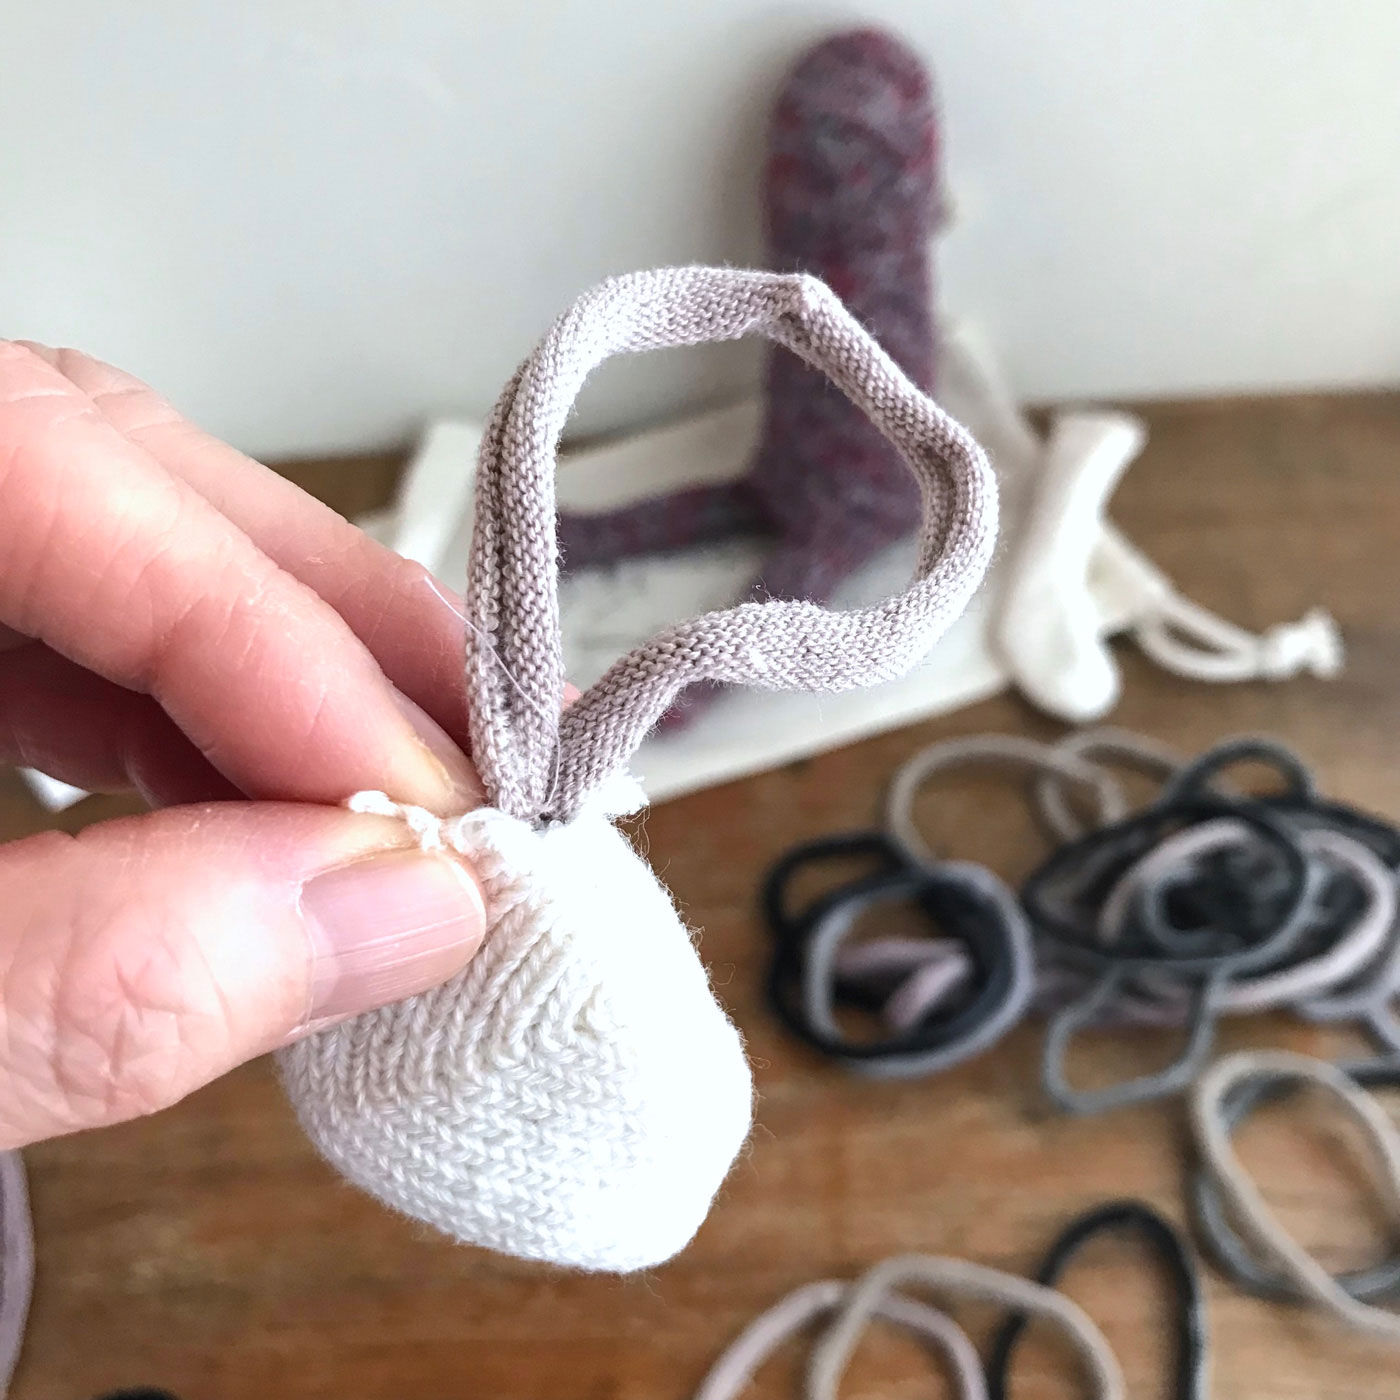 フェリシモの雑貨Kraso|残糸で編んだ靴下と端材で作るおさるのぬいぐるみキット〈巾着付き〉|輪っかは、意外と詰めやすいです。「耳」のパーツは結構重要。ぷっくり大きく、とかサイズや形はもちろん、つける位置でかなり印象が変わりますね。